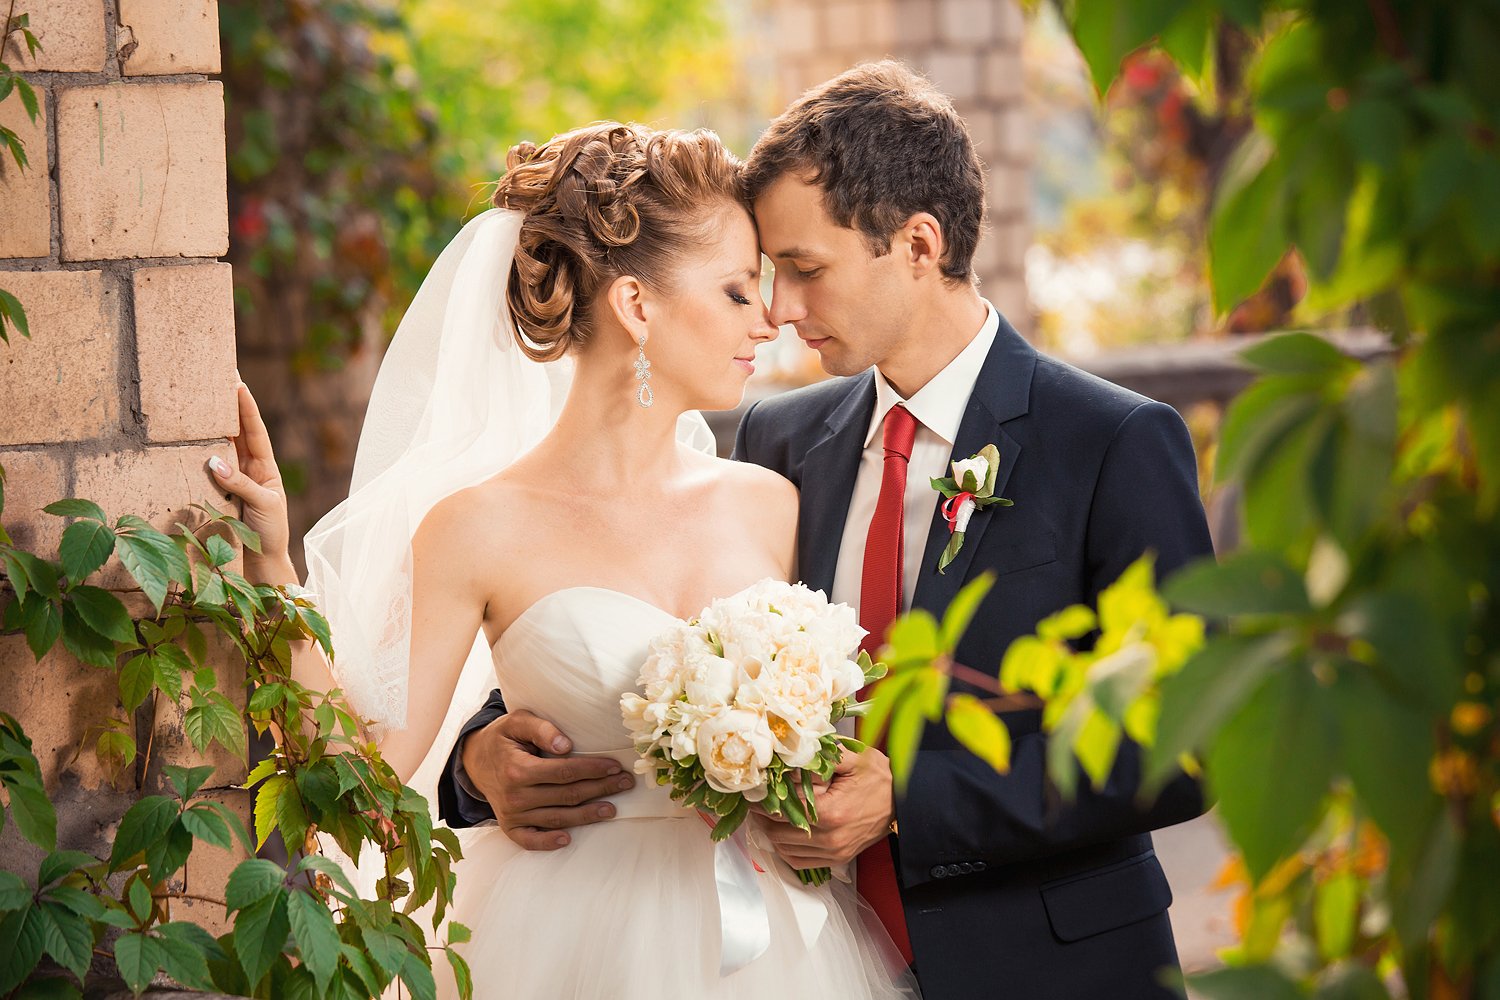 Приметы для невесты на свадьбу: советы будущим женам